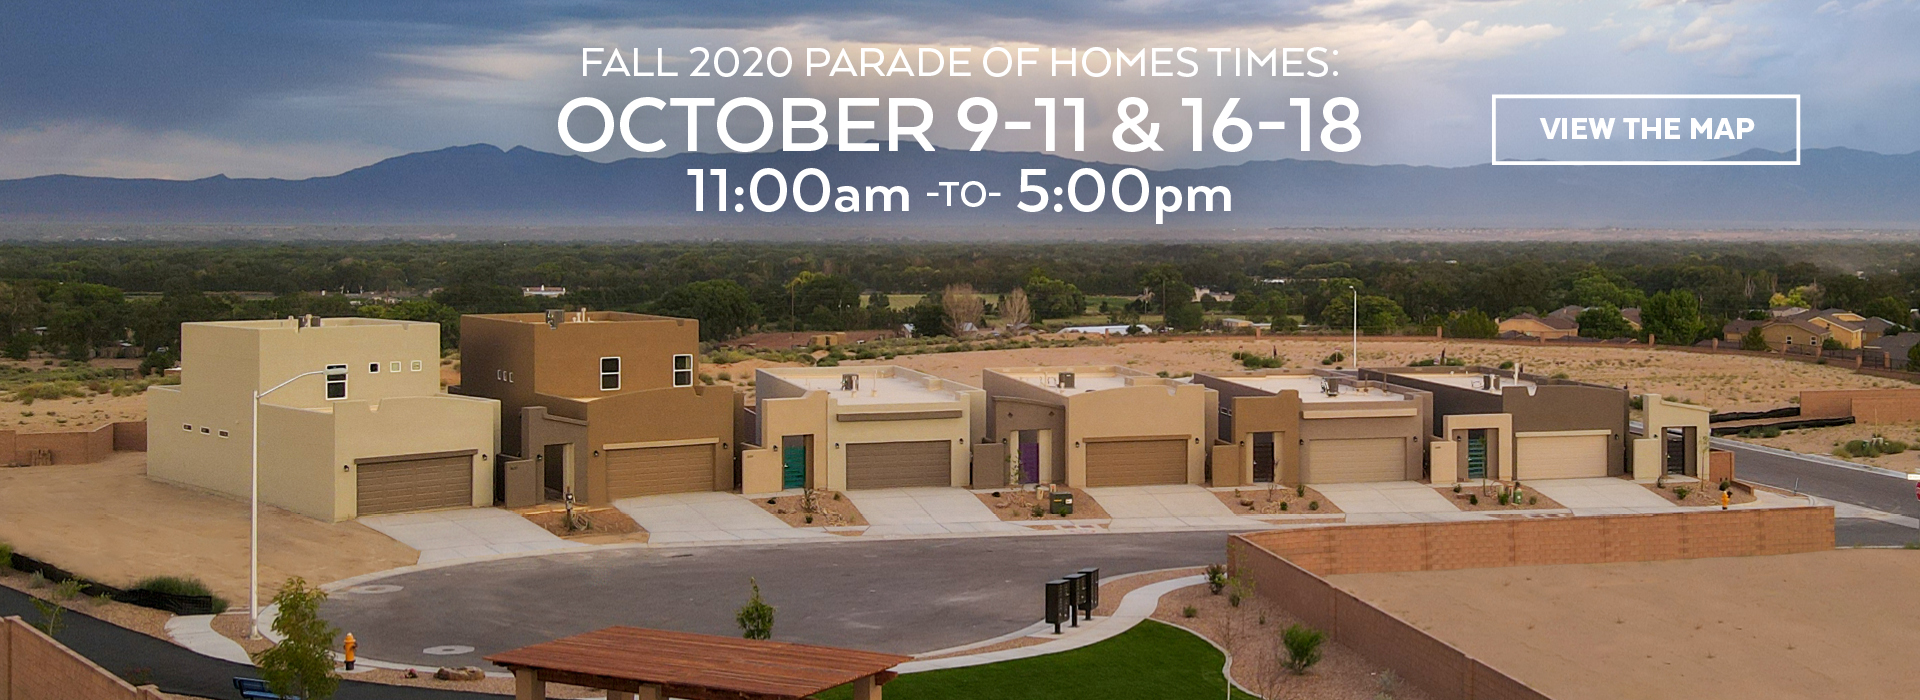 Parade of Homes Albuquerque & New Mexico Fall 2020